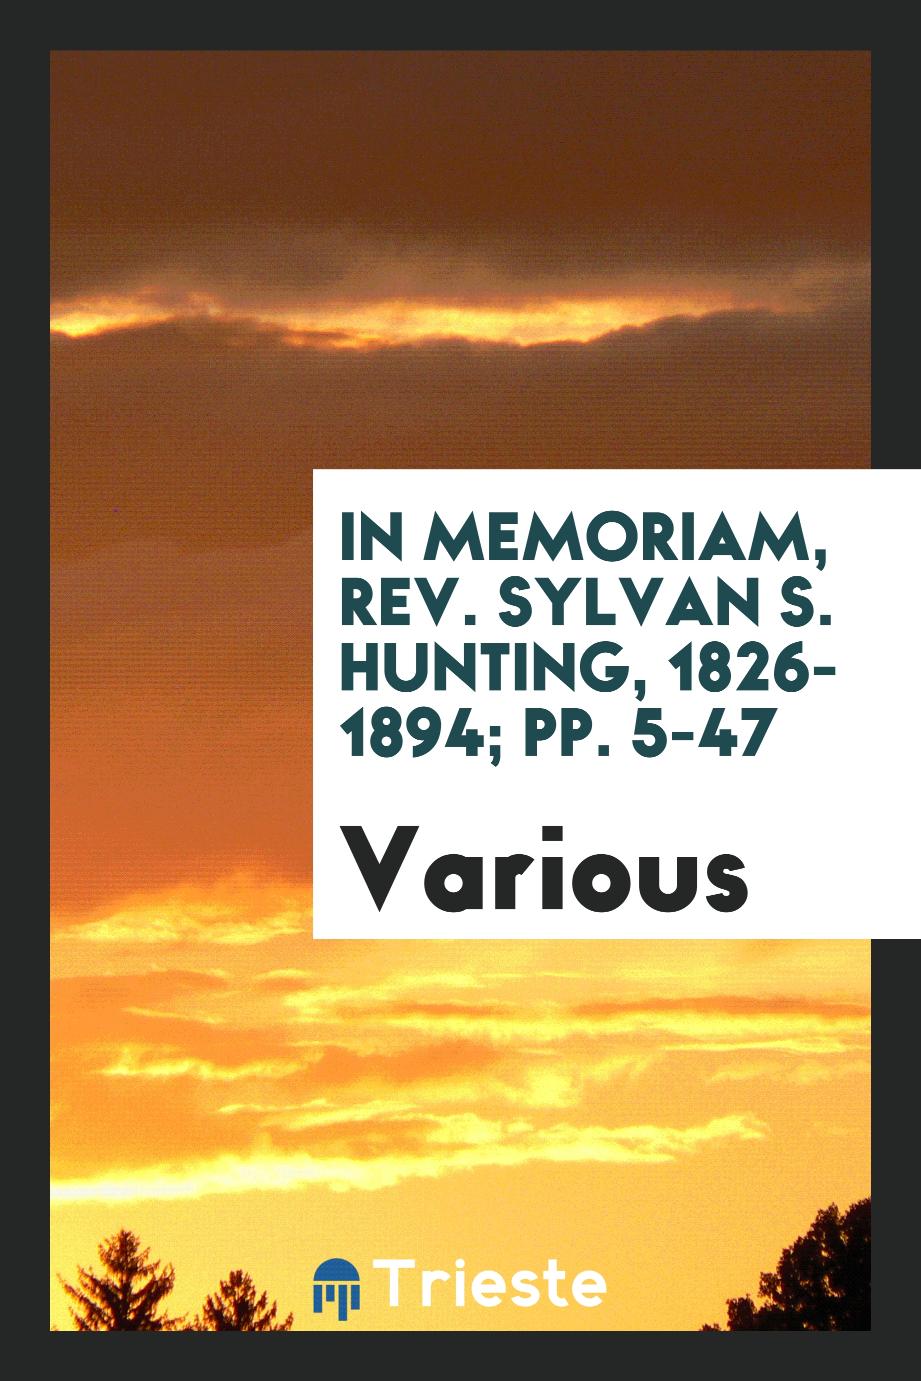 In Memoriam, Rev. Sylvan S. Hunting, 1826-1894; pp. 5-47